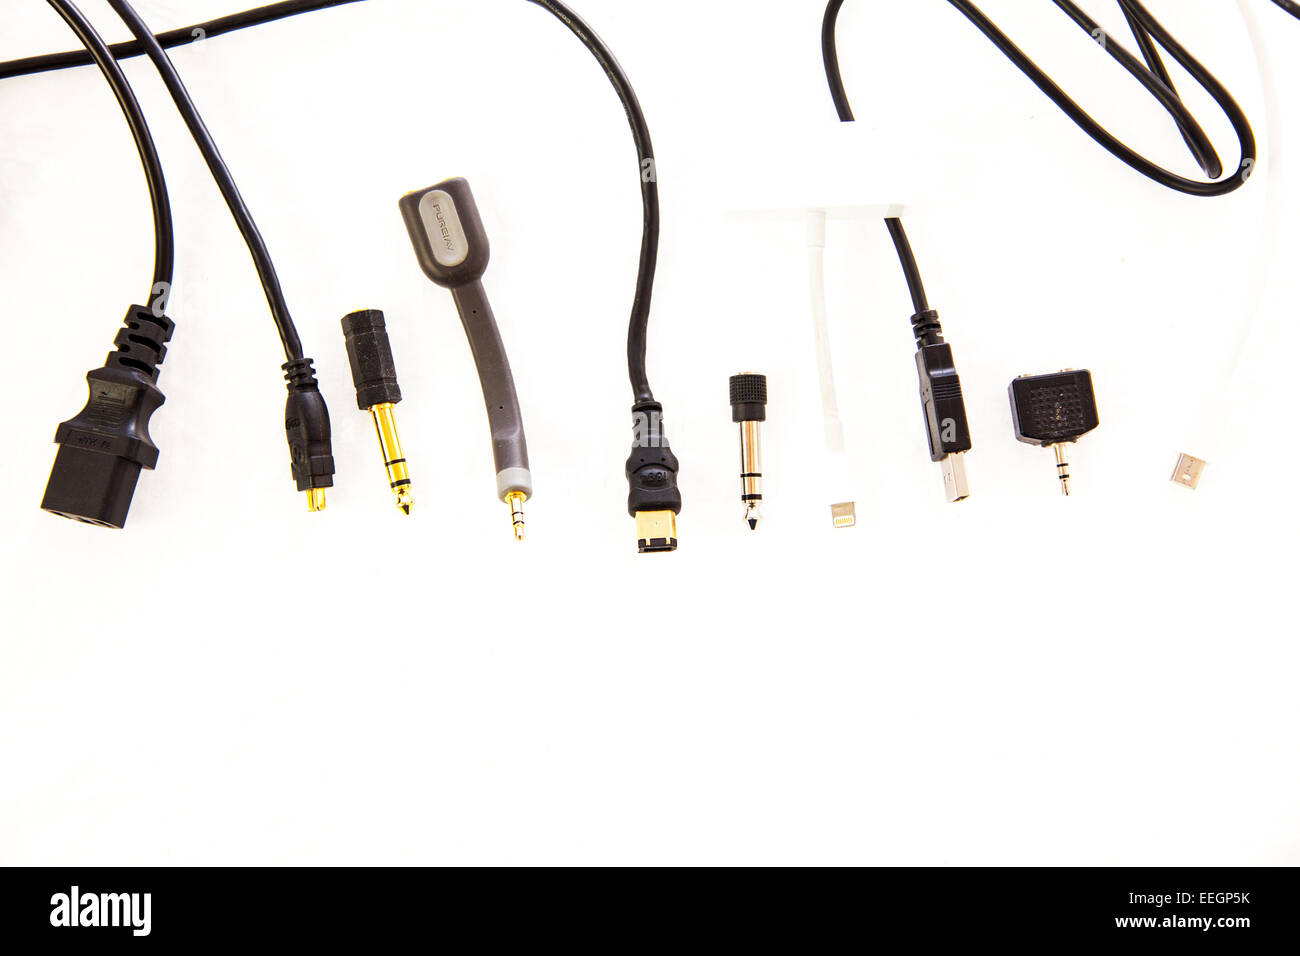 elektrische Anschlüsse Kabel USB-Stecker Stecker Wasserkocher Blei führt nützliche alltägliche Klinkenkabel Kopie Raum weißen Hintergrund ausschneiden Stockfoto